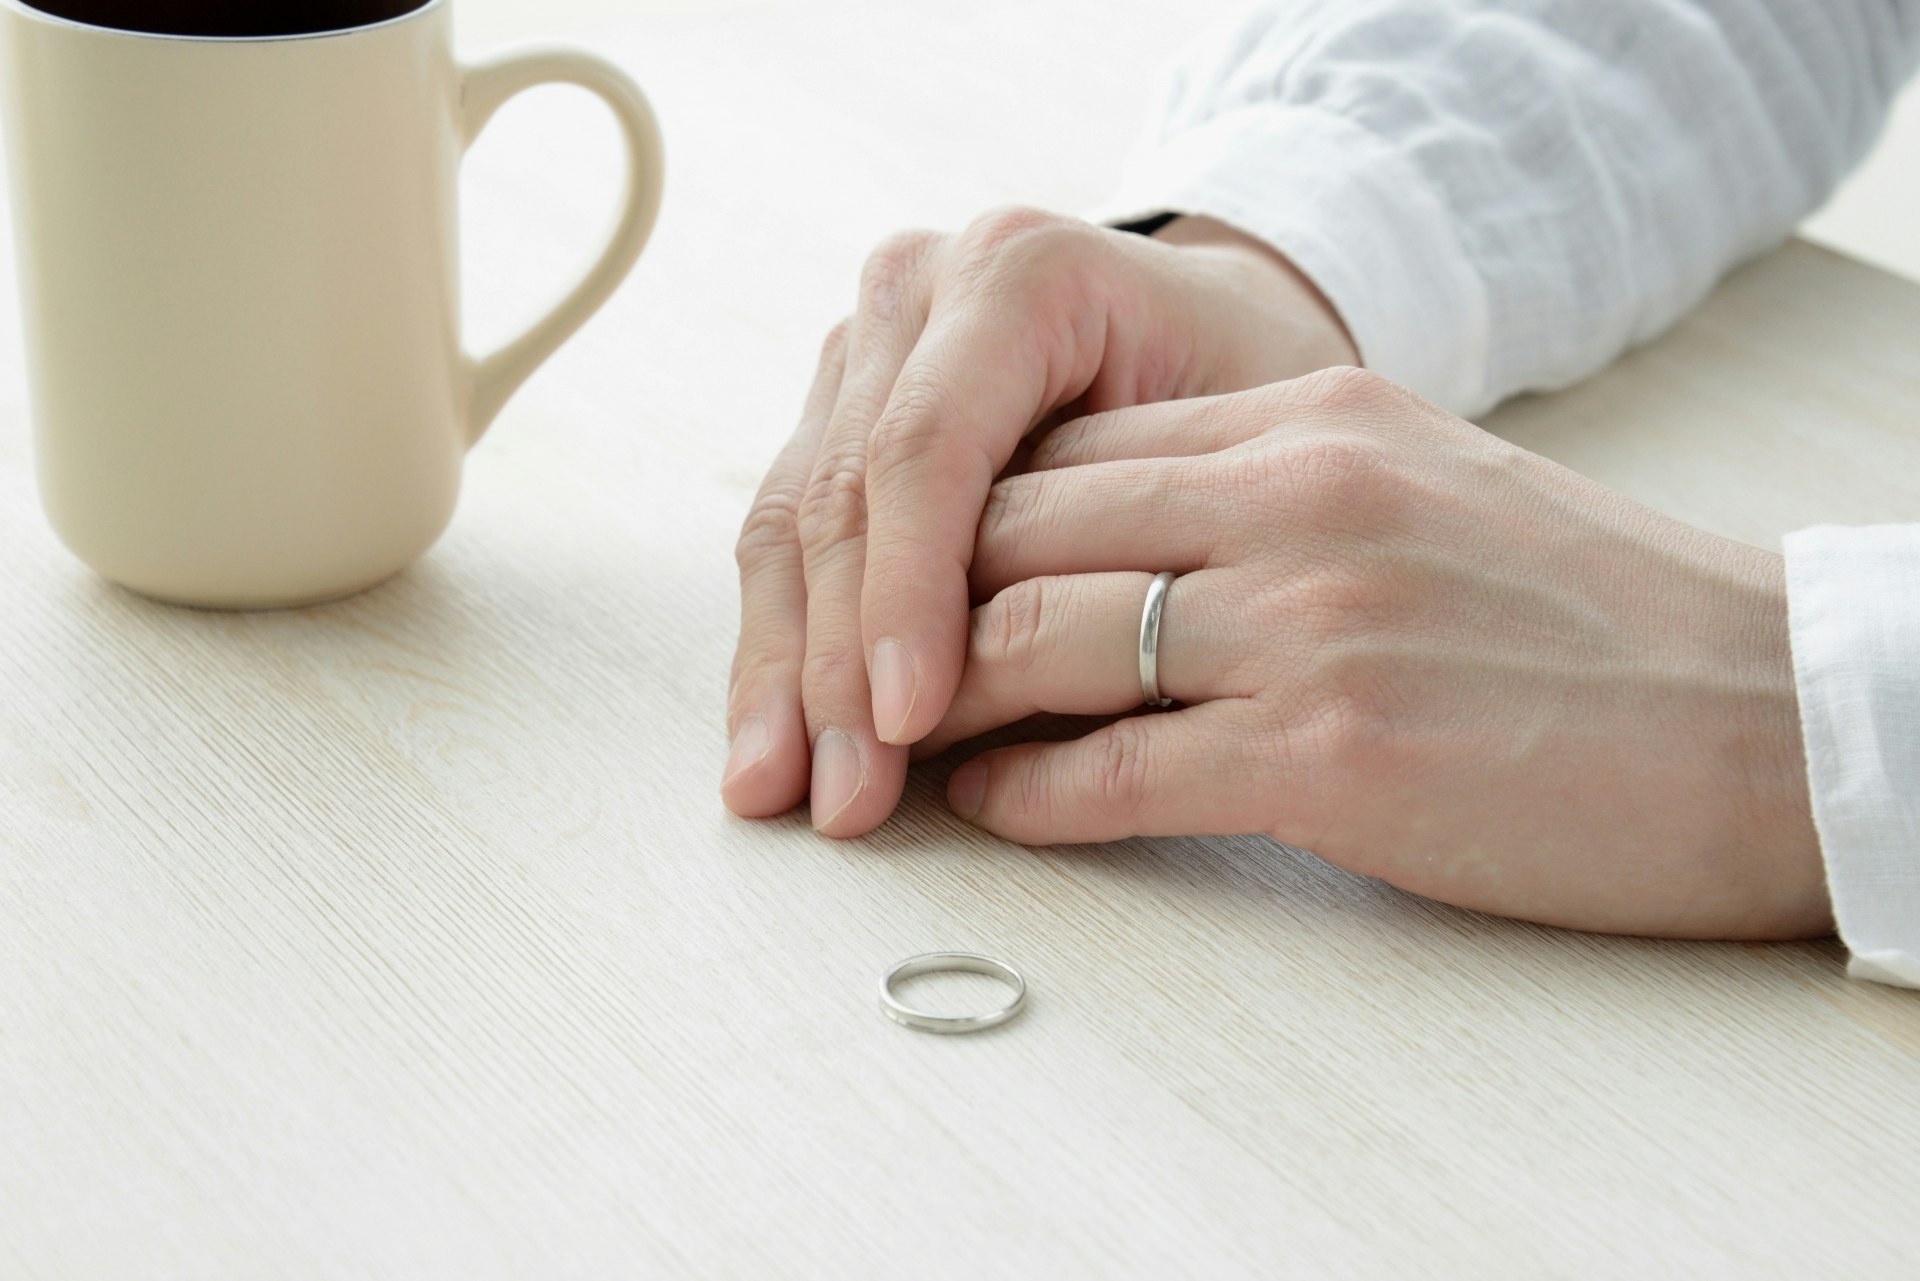 結婚指輪をはずし、離婚を考えている人